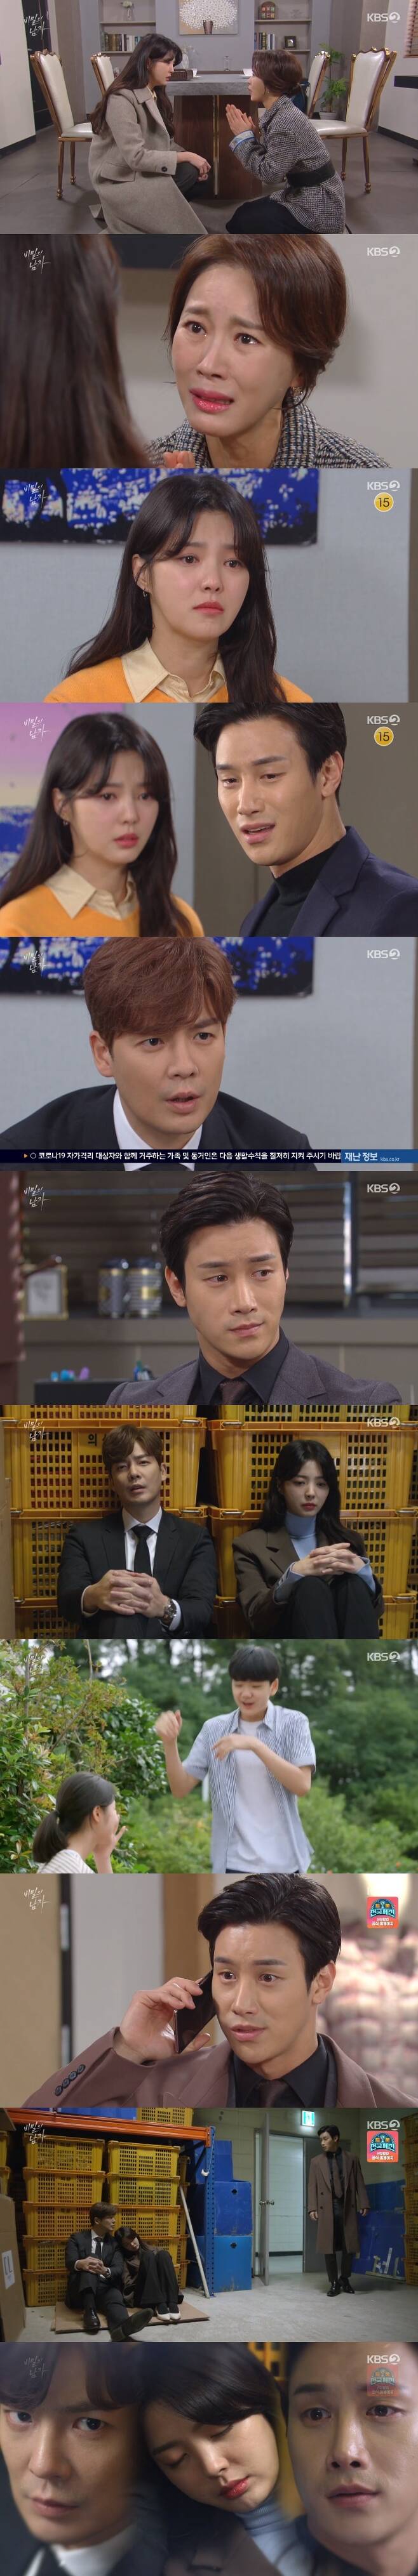 KBS 2TV '비밀의 남자' 캡처 © 뉴스1